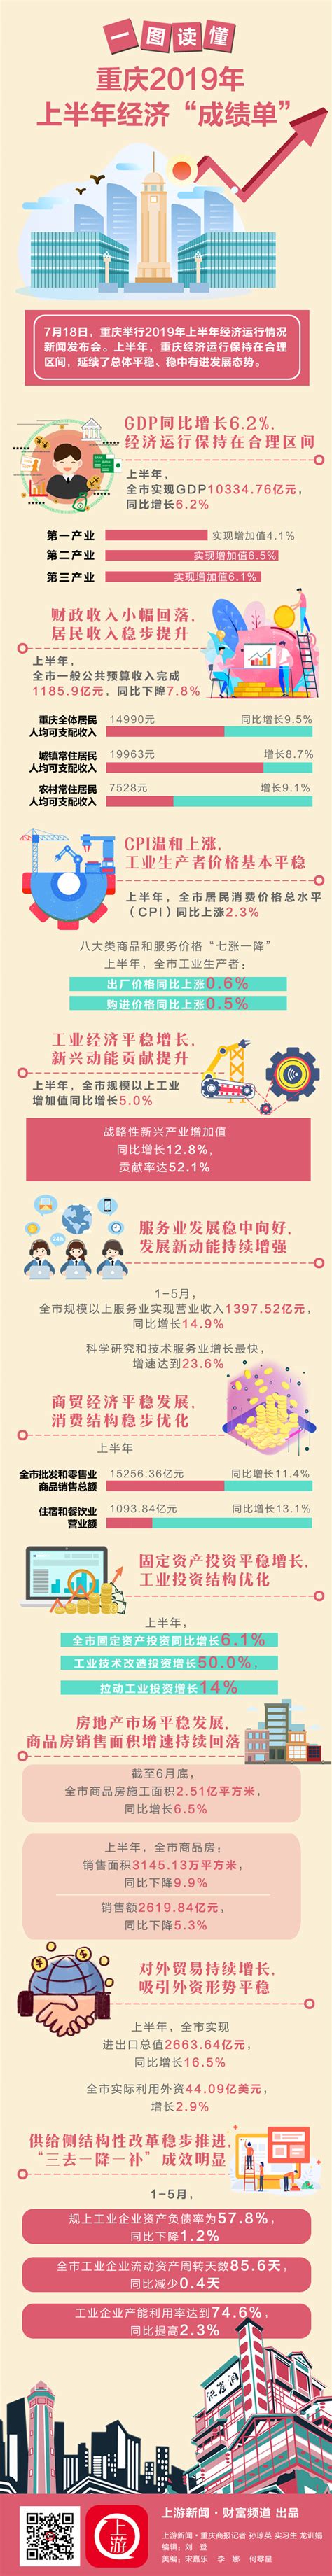 一图读懂重庆2019年上半年经济“成绩单” - 上游新闻·汇聚向上的力量